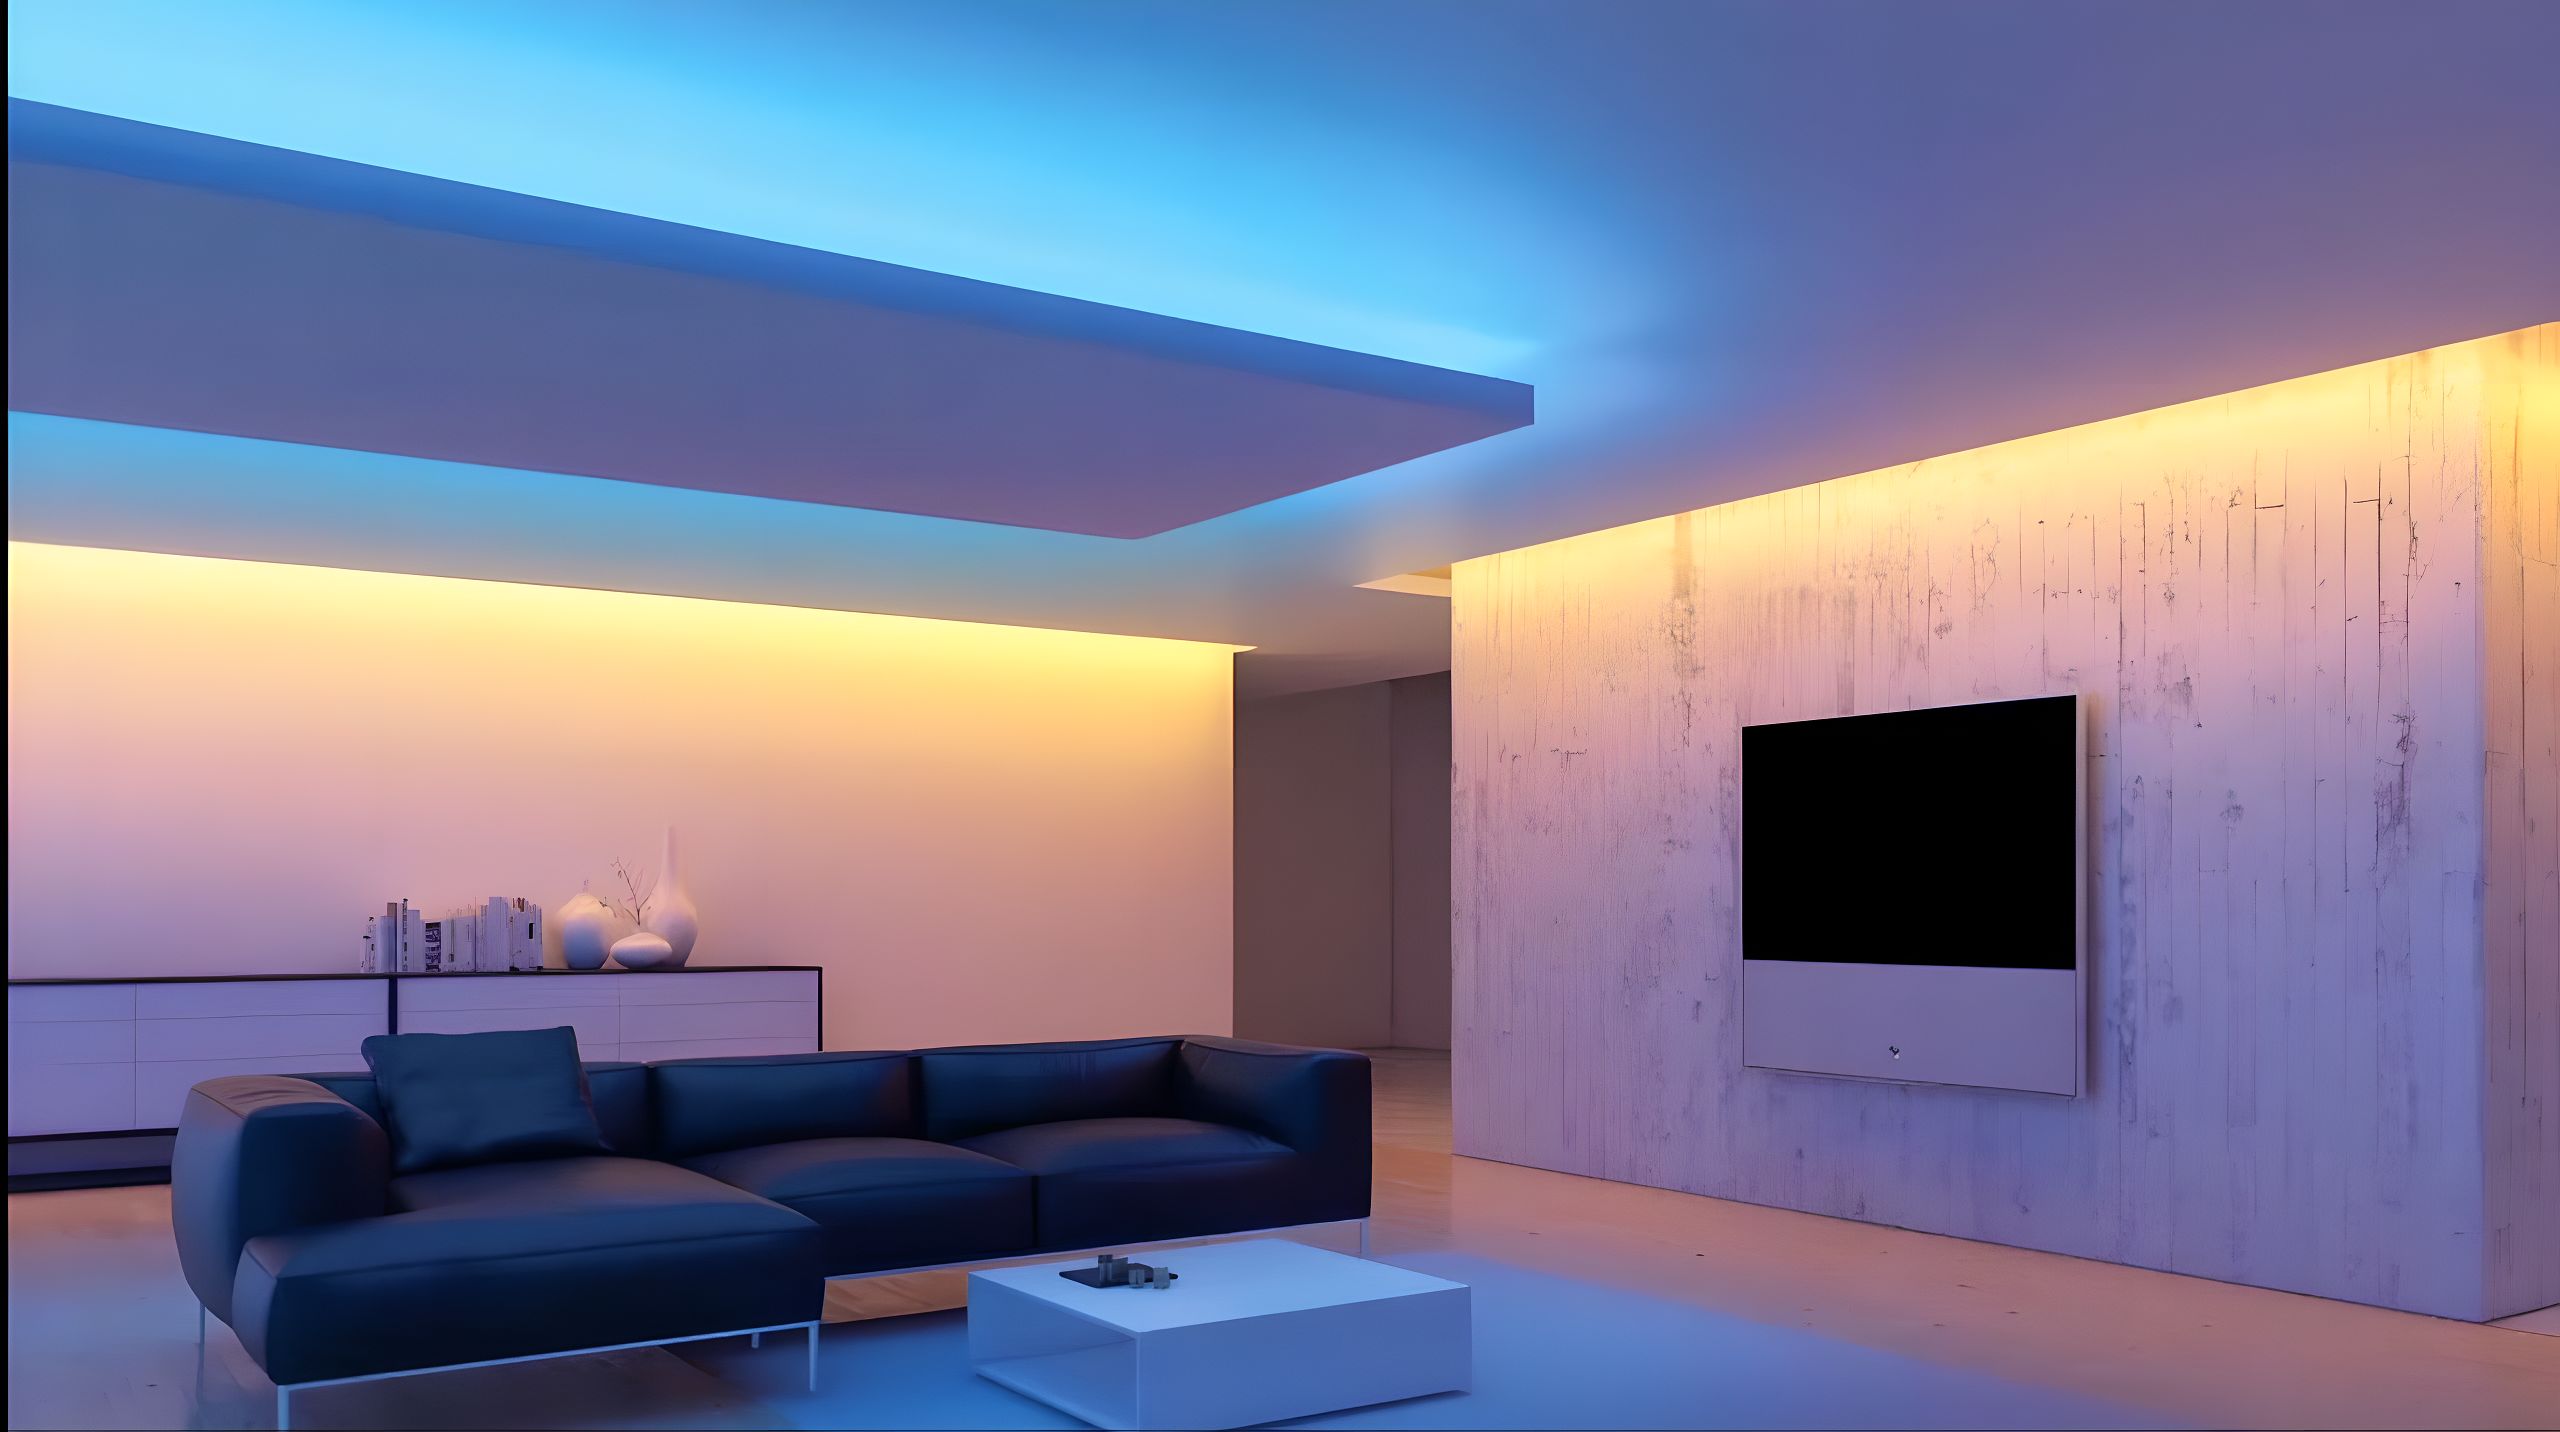 Проектирование света теплый свет. Потолок с подсветкой. Светодиодная подсветка потолка. Светодиодная лента в интерьере. Натяжные потолки с подсветкой.